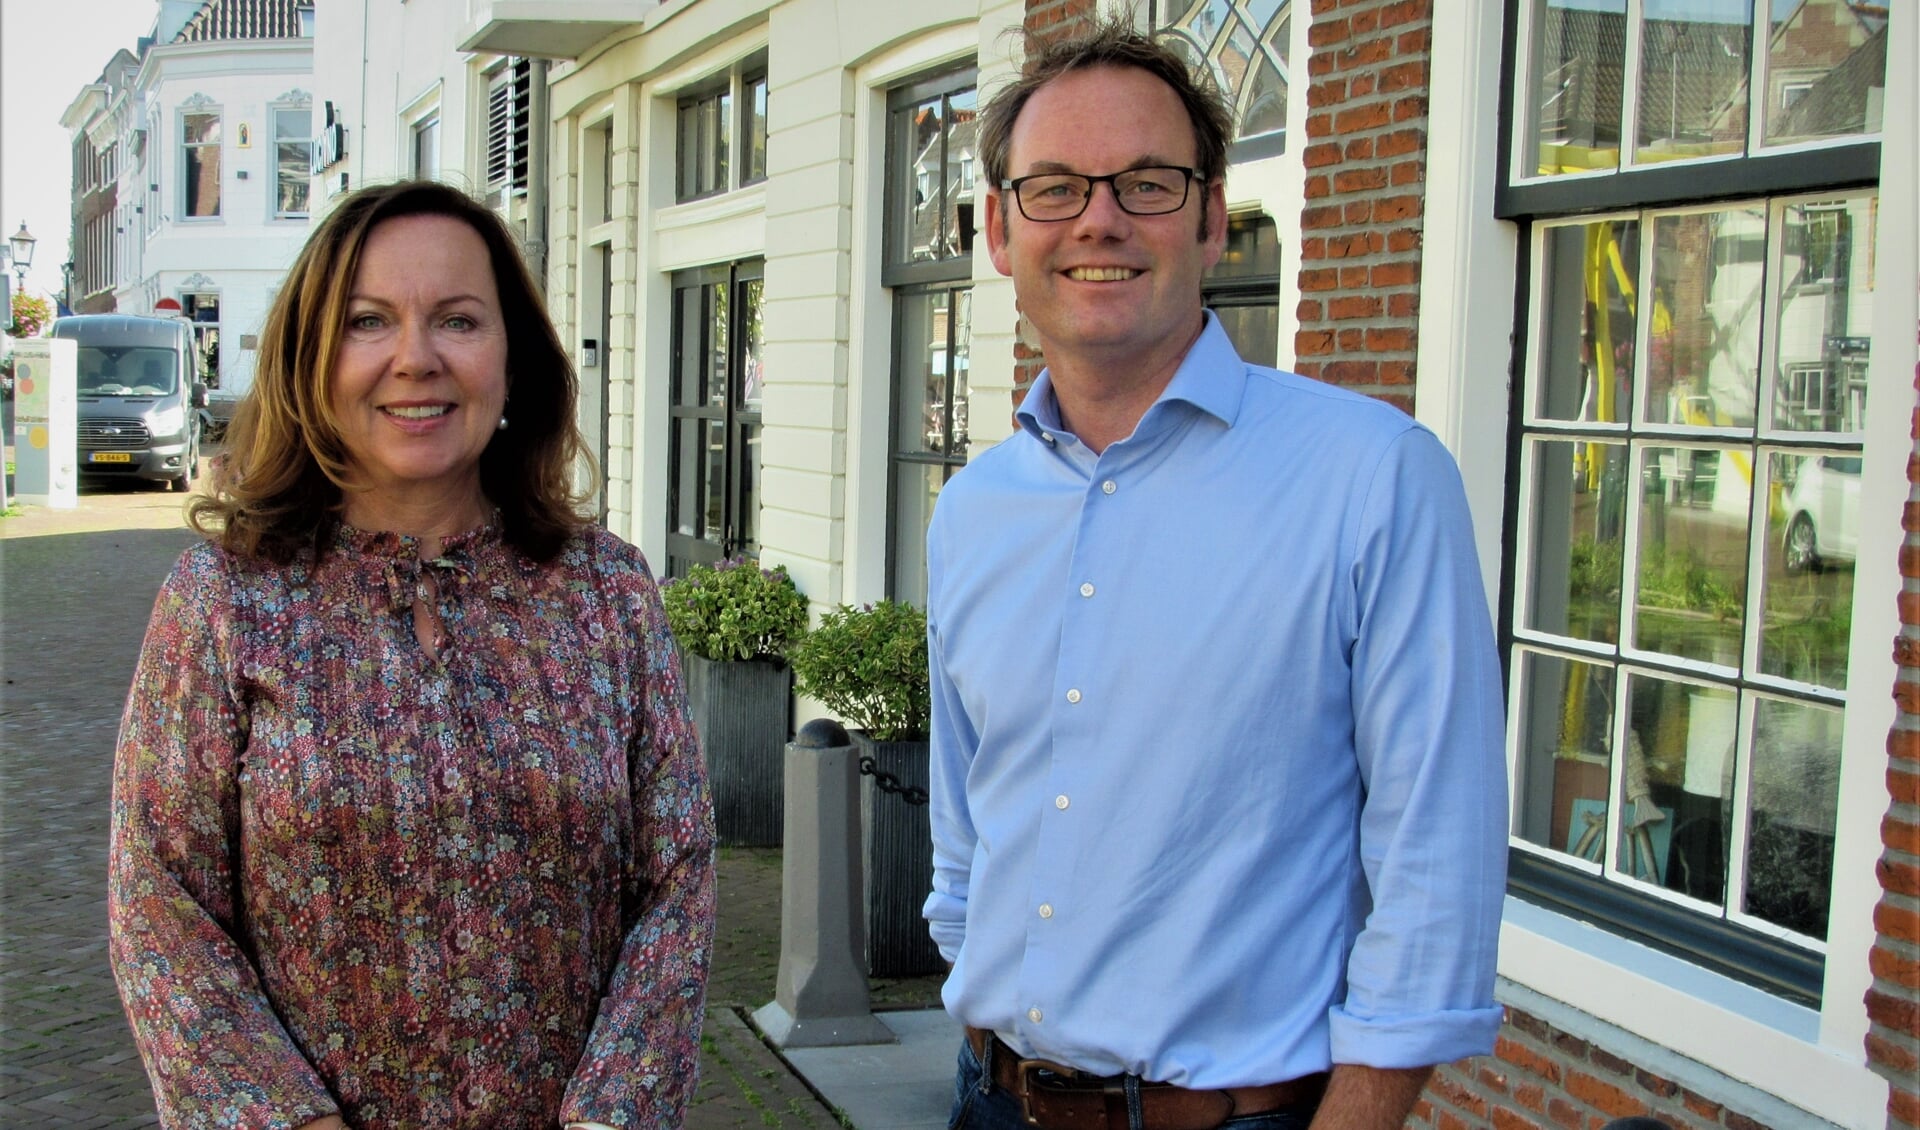 Tanja Storm van De BurenBemiddelaar Vlaardingen & Maassluis en wethouder Sjoerd Kuiper zijn blij met de aangegane samenwerking op het gebied van burenbemiddeling. 